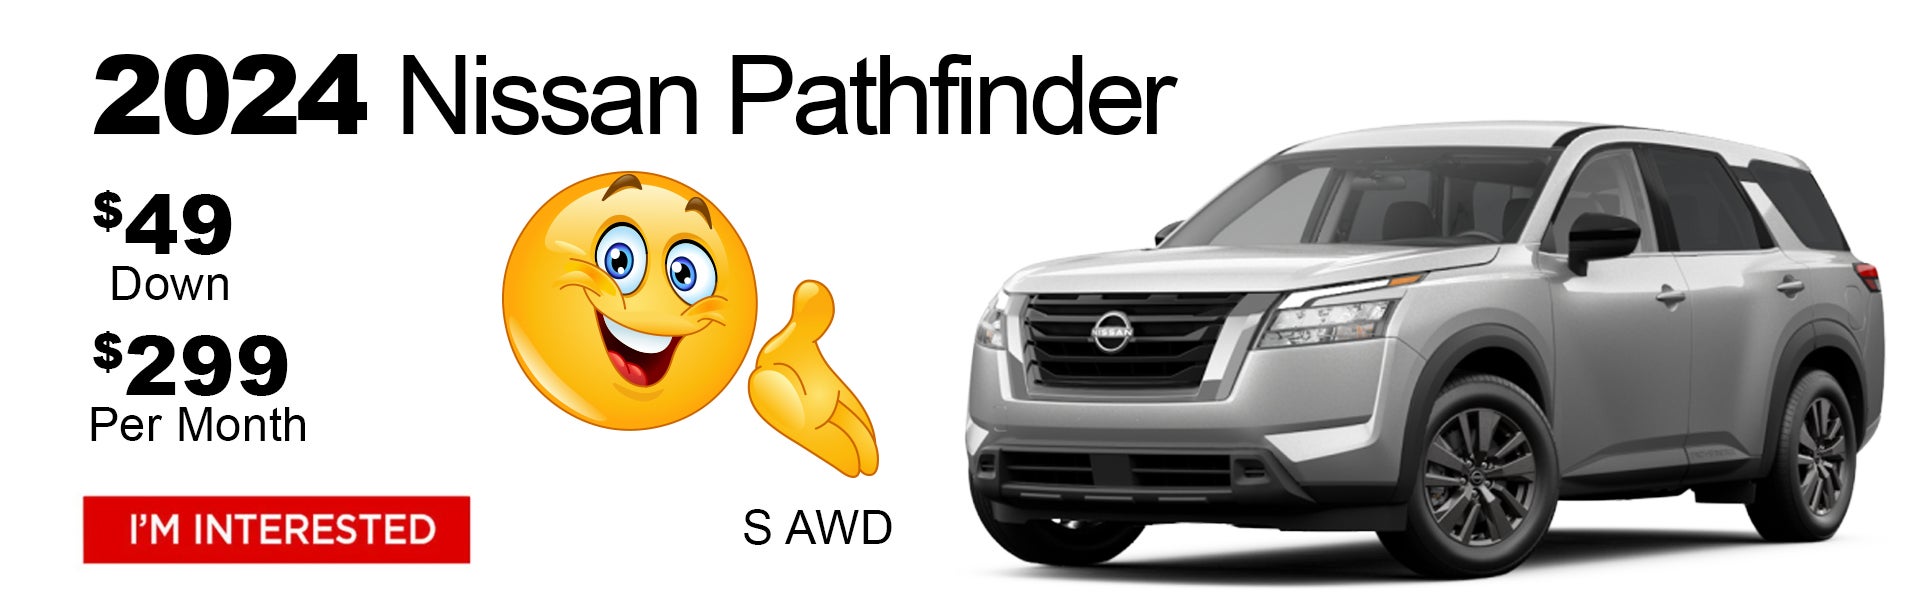 New Nissan Pathfinder $49 Dealer Special